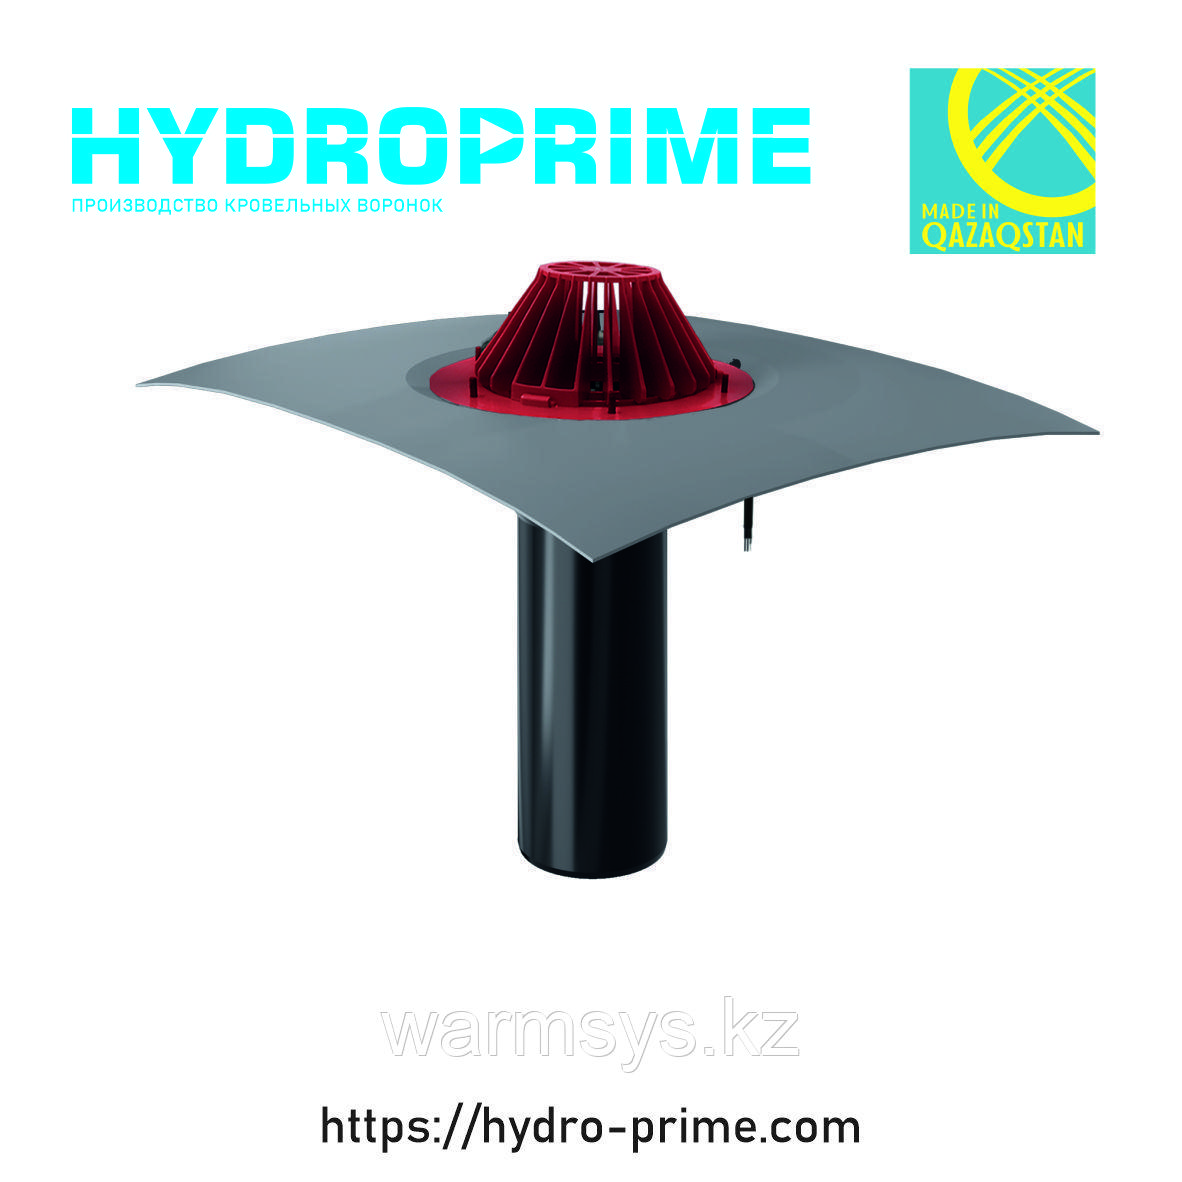 Кровельная воронка HydroPrime HPH 110x720 с обогревом и ПВХ полотном, фото 1